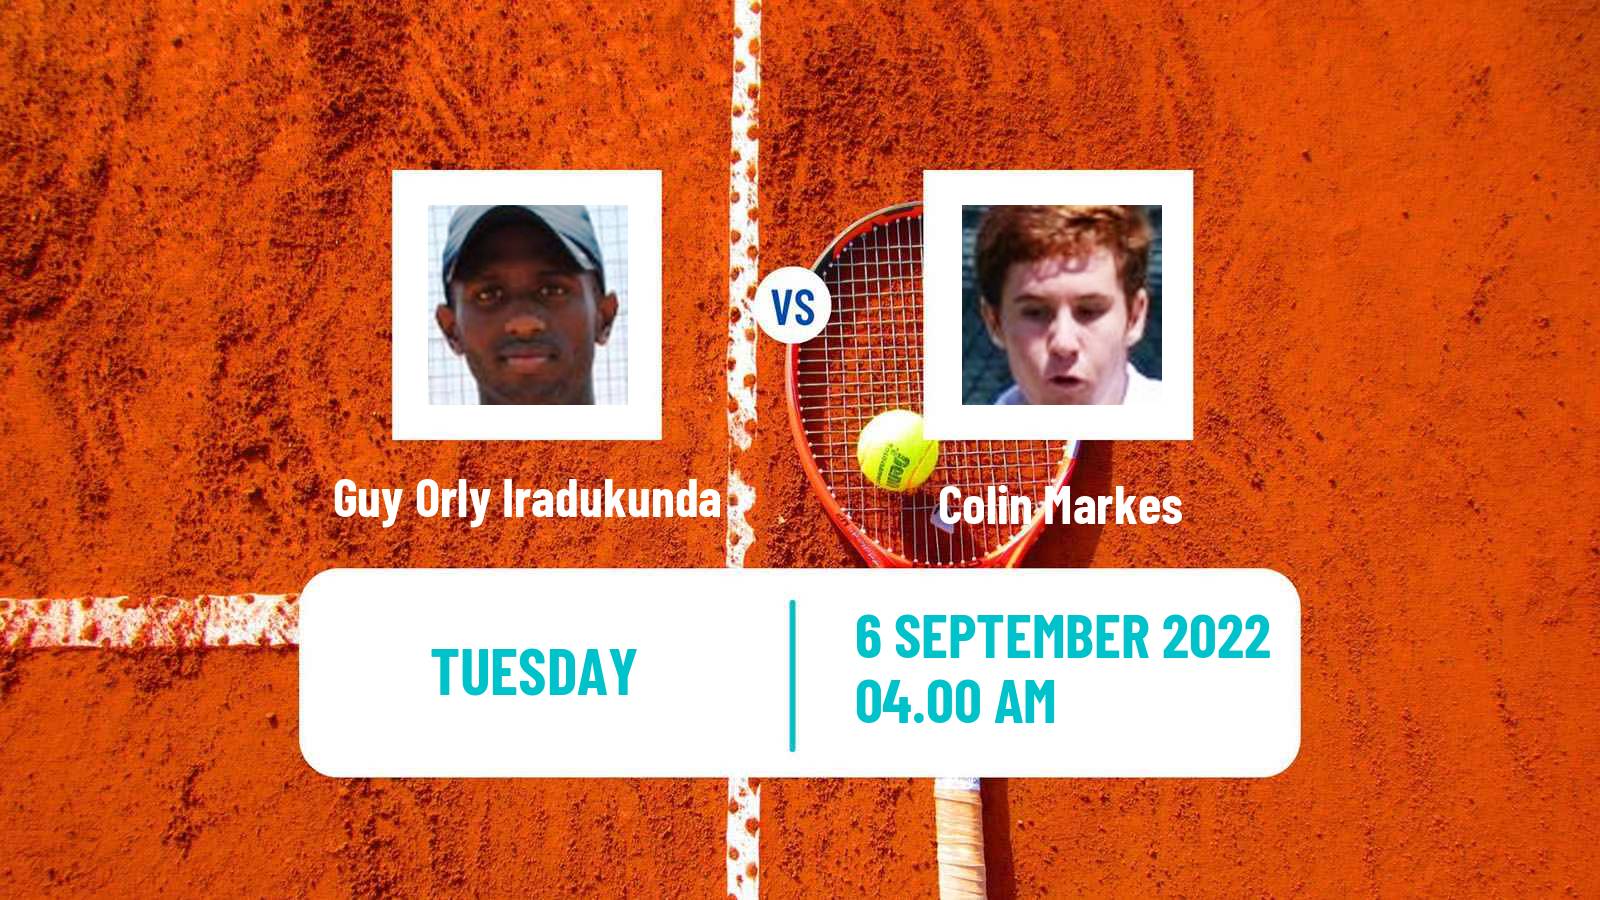 Tennis ITF Tournaments Guy Orly Iradukunda - Colin Markes